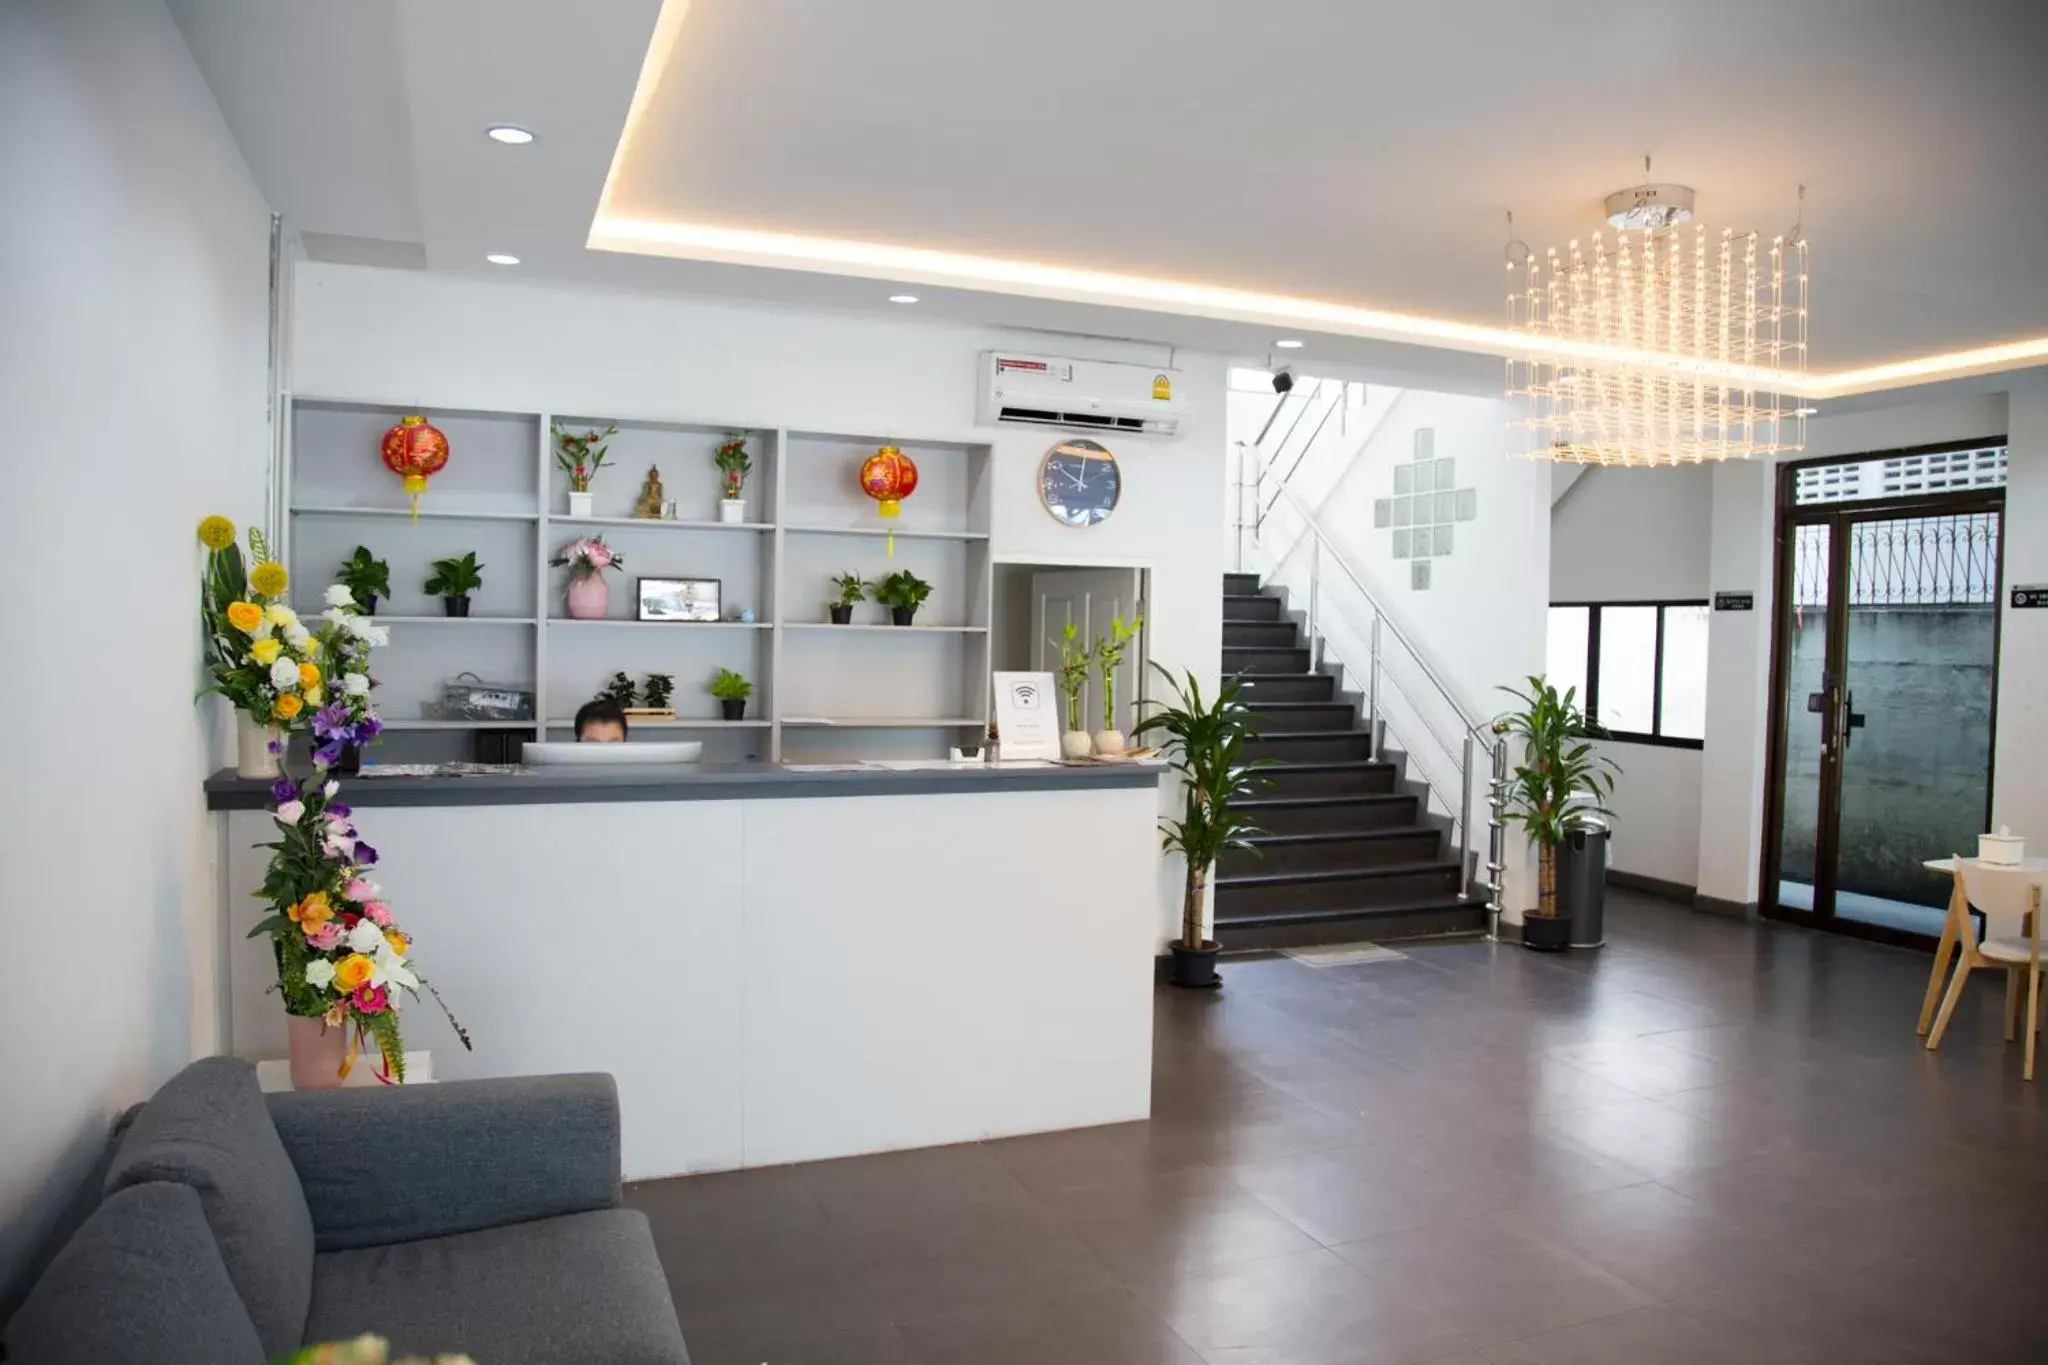 Lobby or reception, Lobby/Reception in Moca Hotel